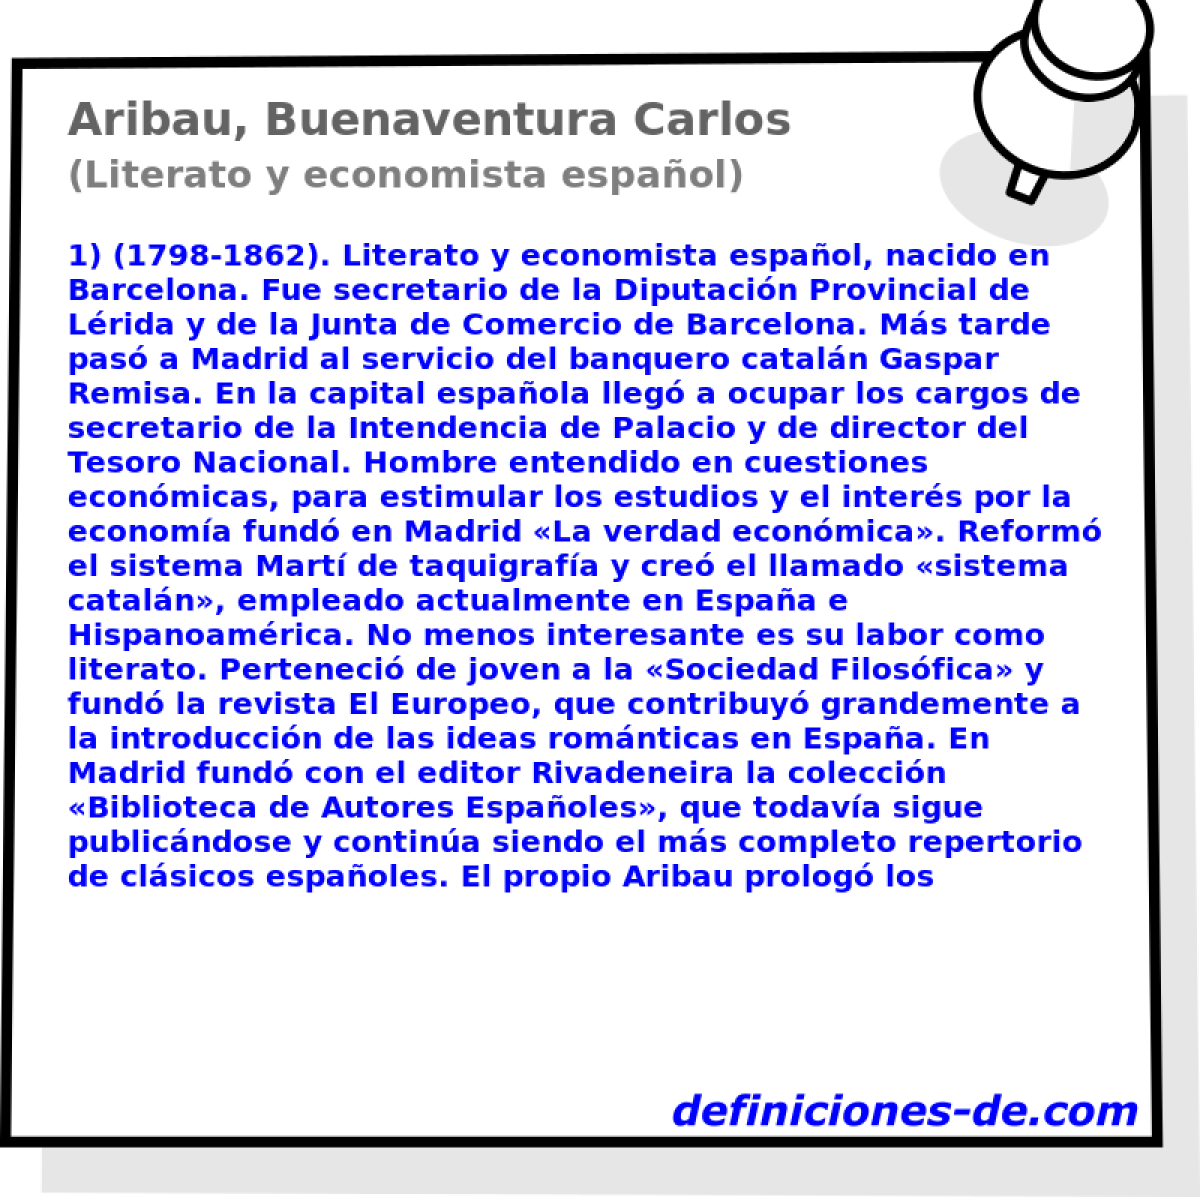 Aribau, Buenaventura Carlos (Literato y economista espaol)